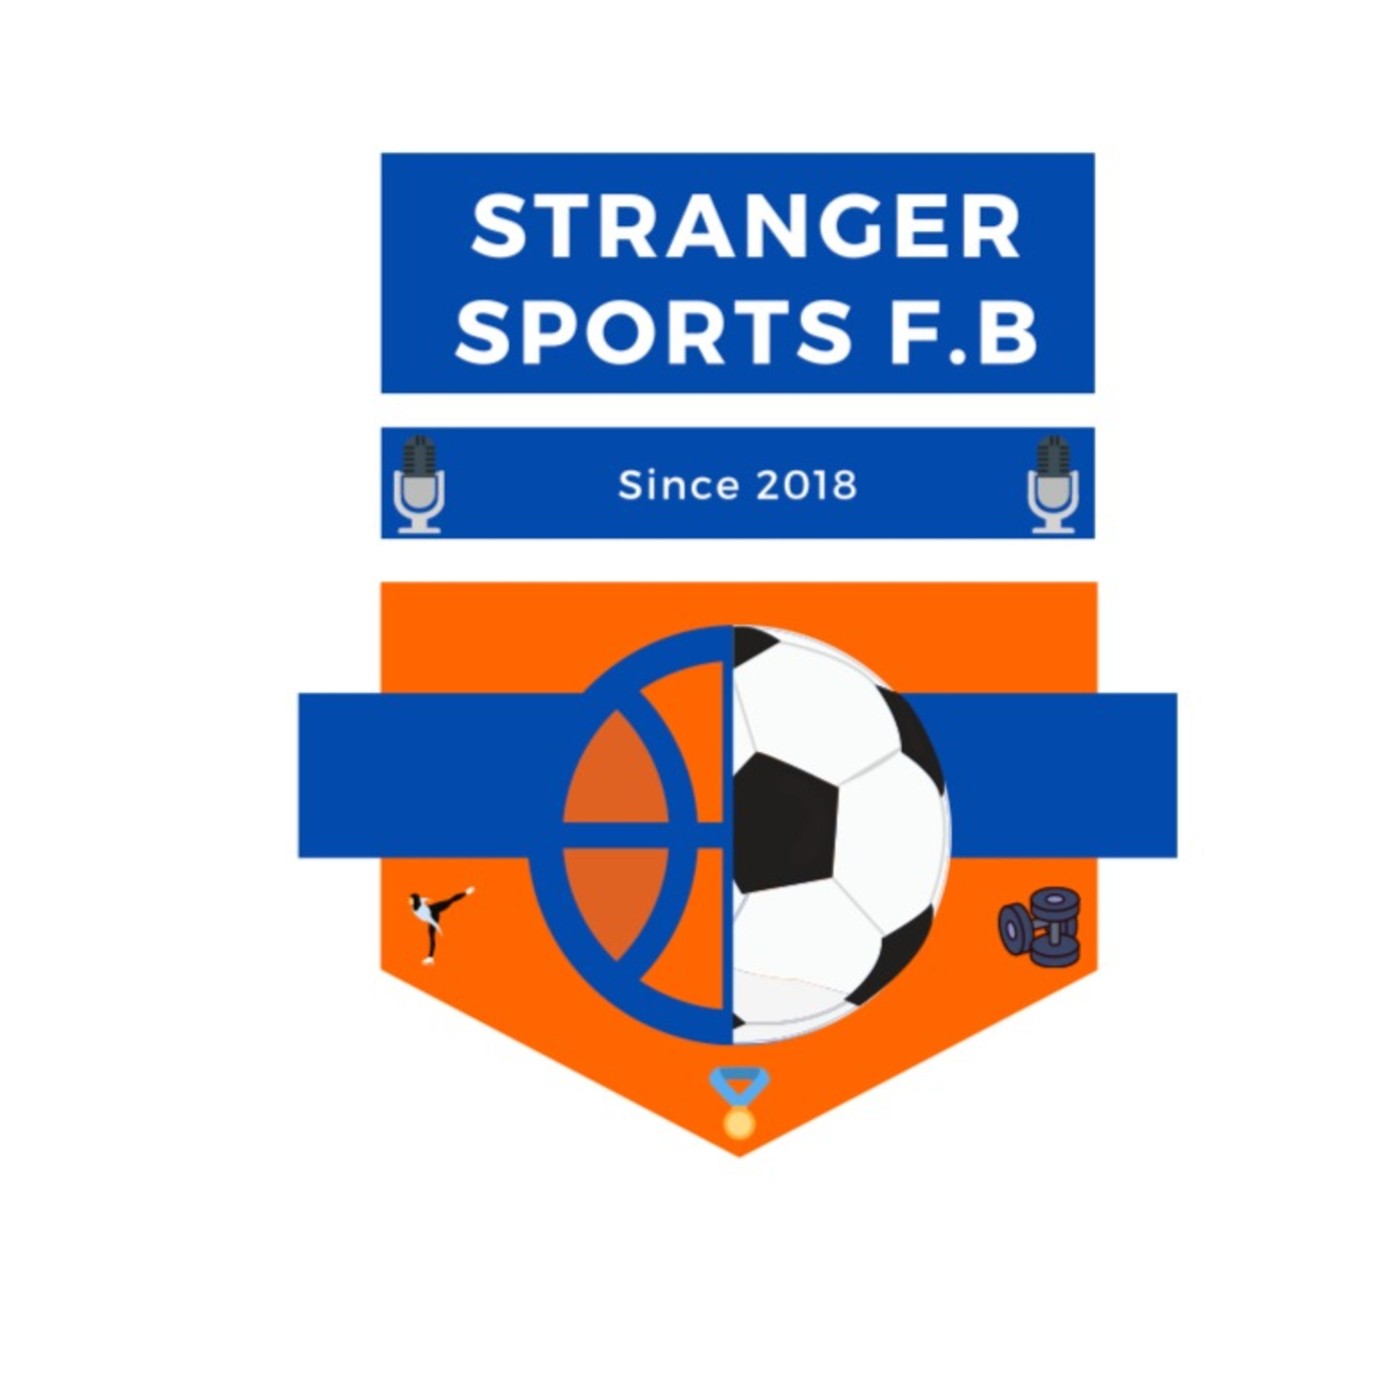 Stranger sports #5